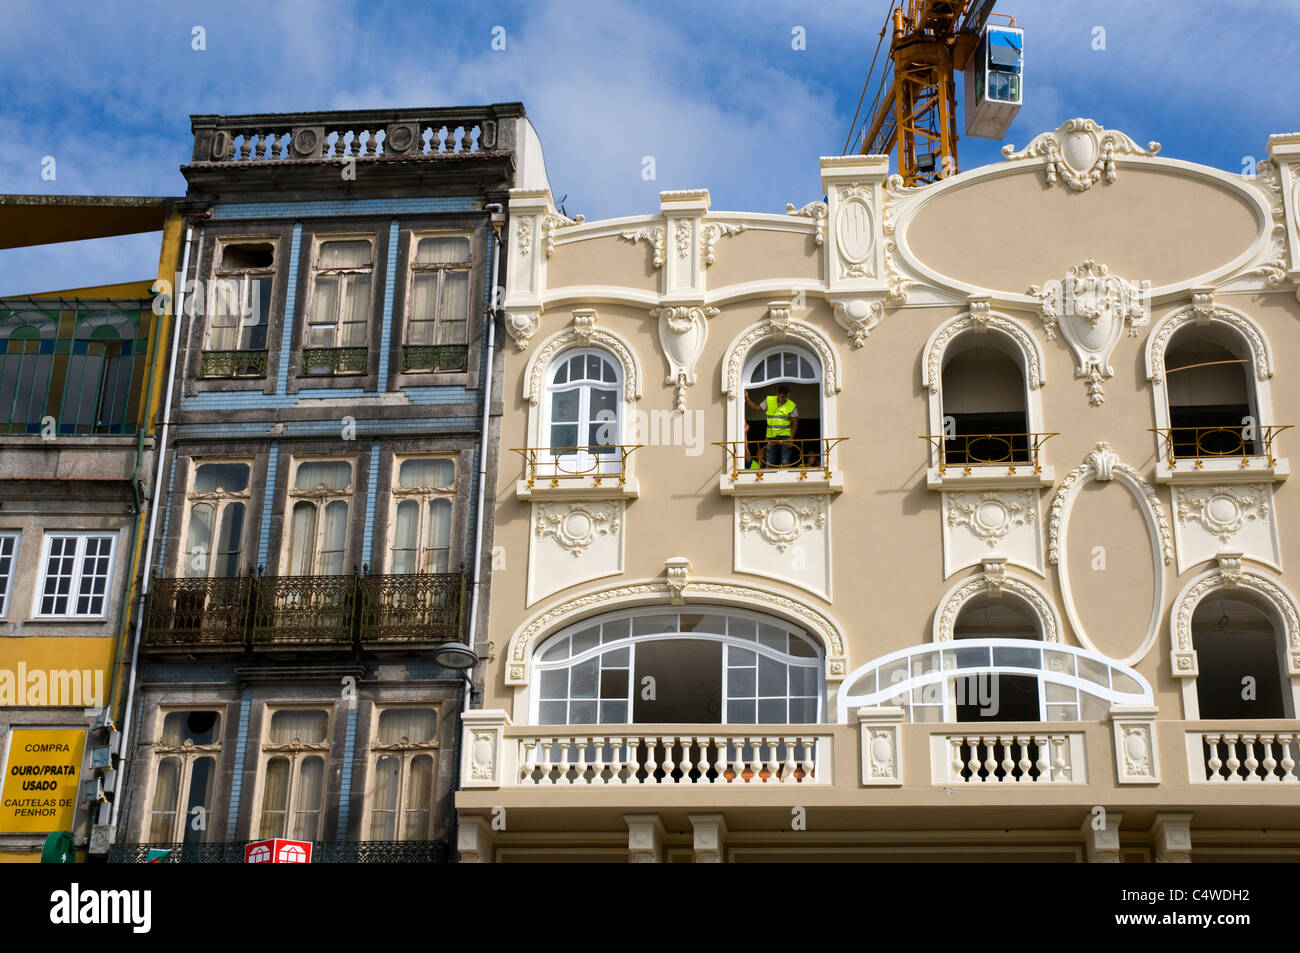 Un constructeur montage d'une fenêtre pour un nouveau bâtiment à Porto. Peu de la santé et de la sécurité. Grue avec grand angle. Banque D'Images